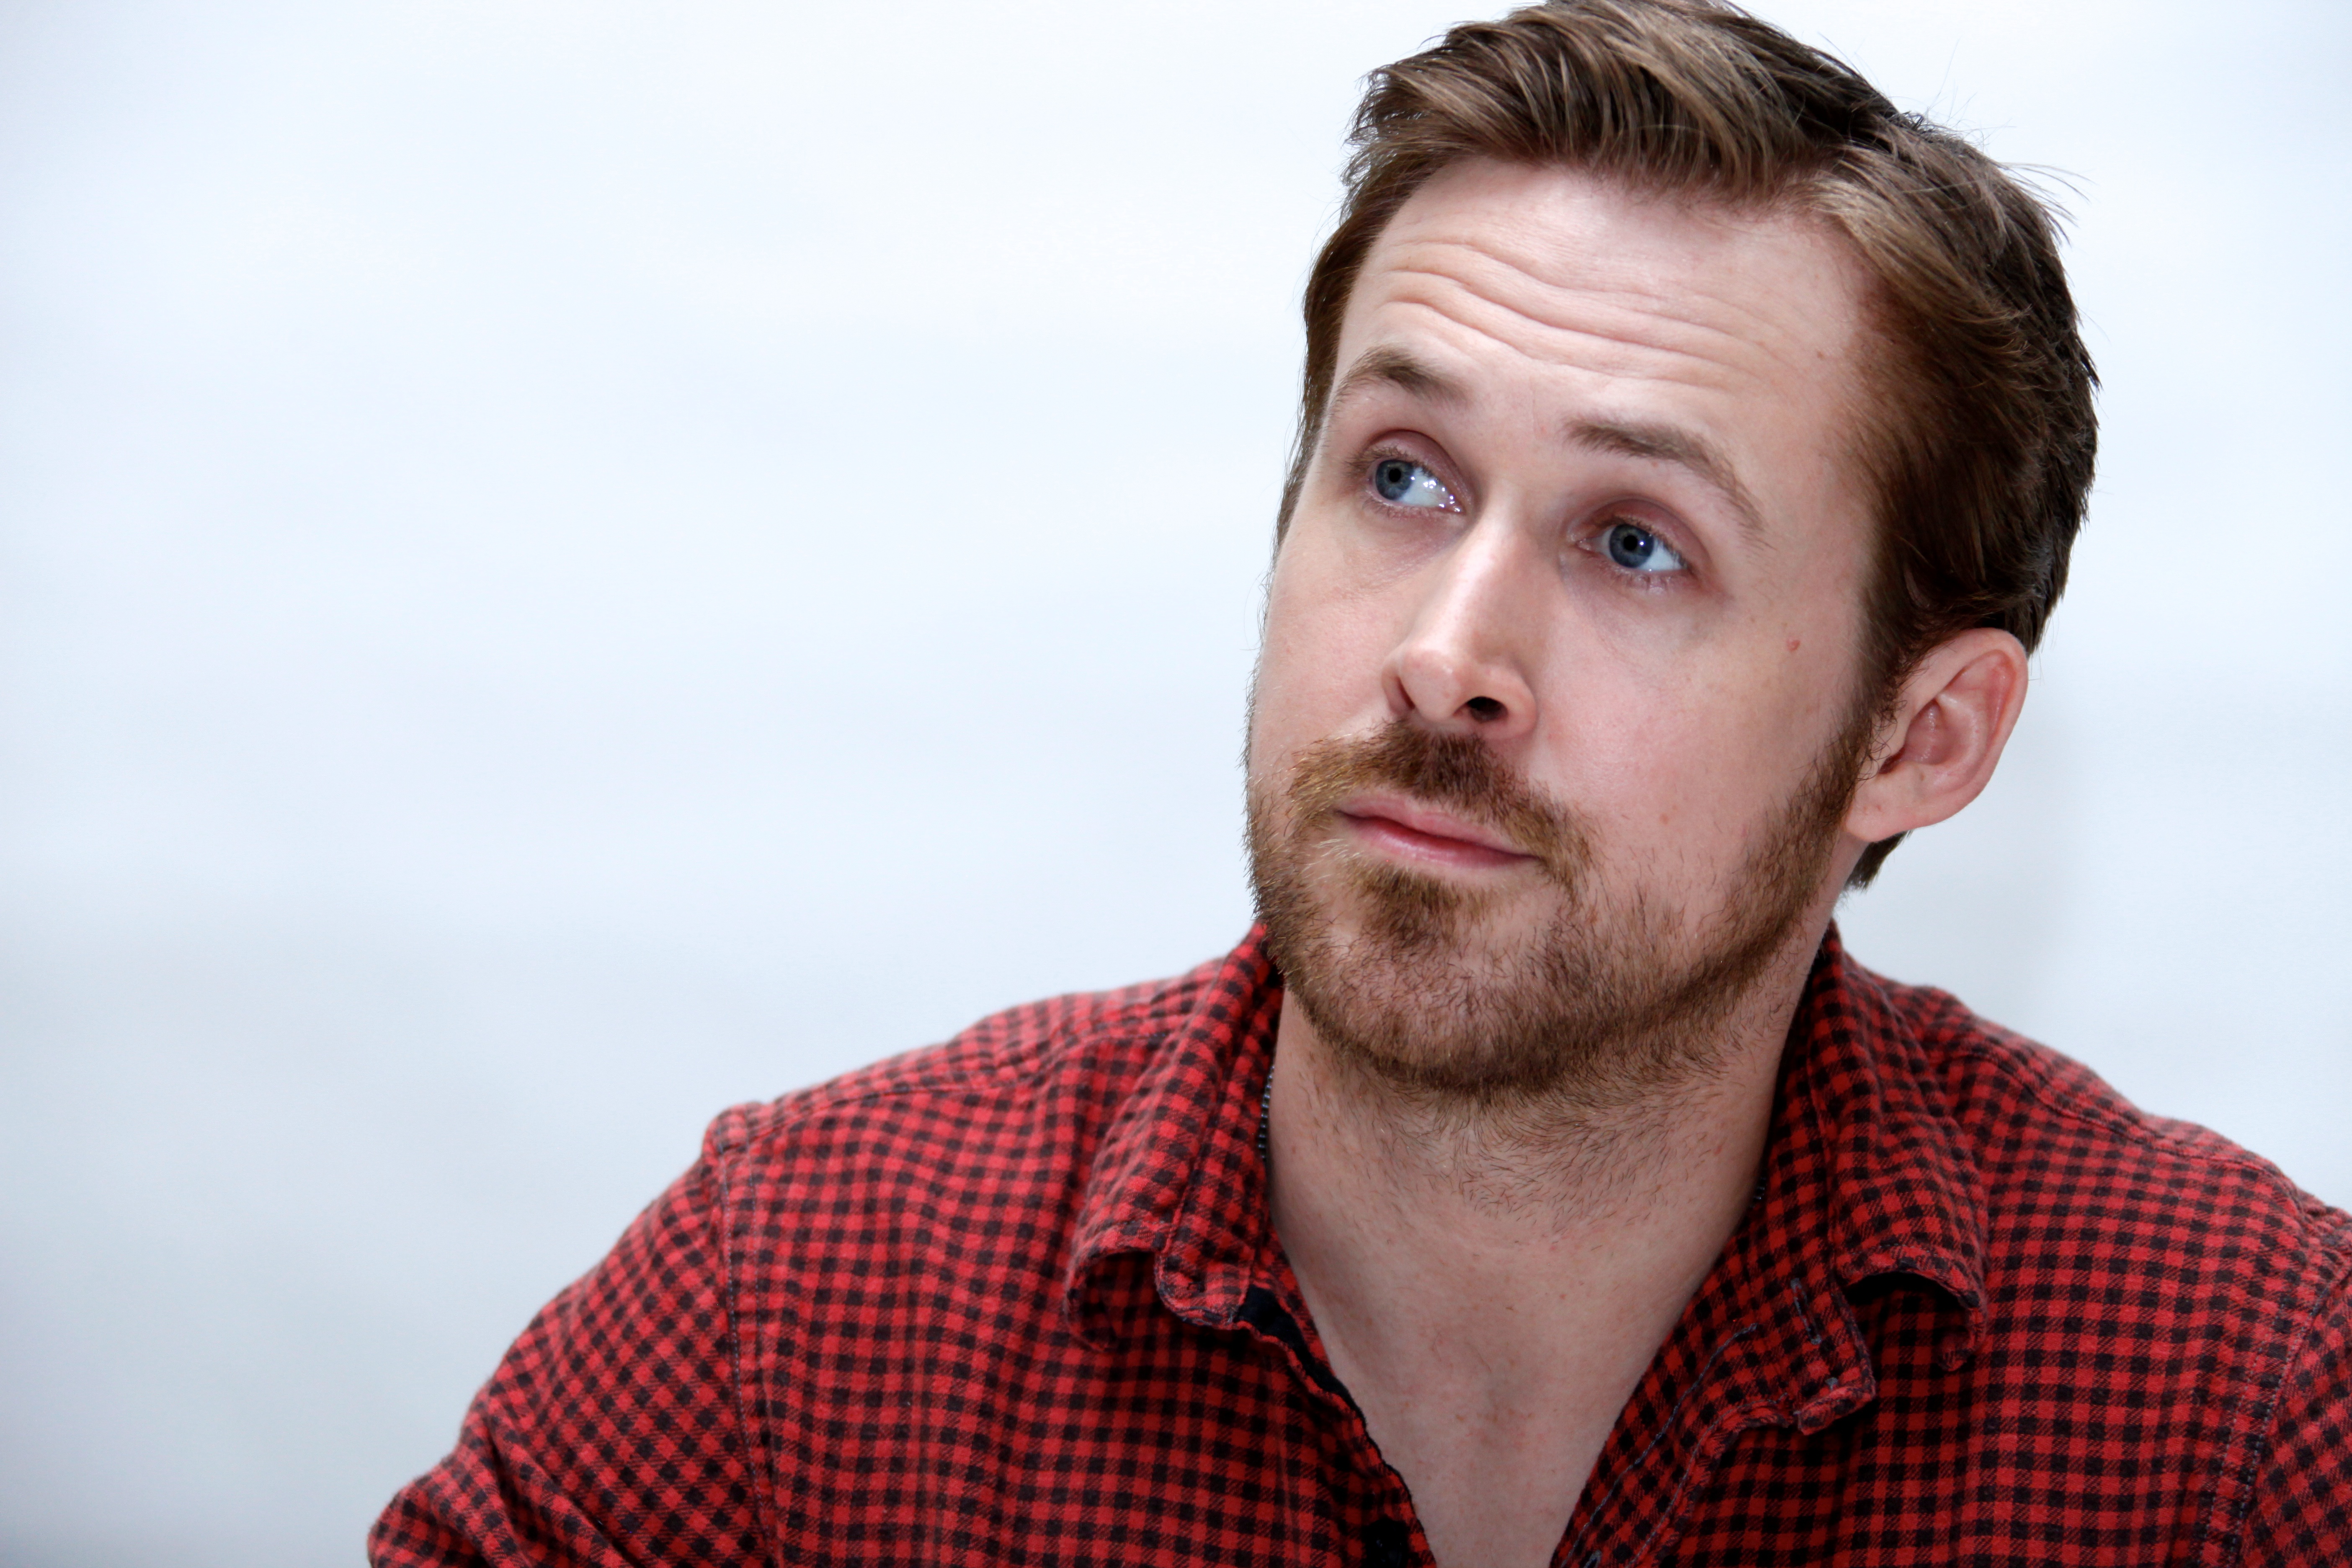 قشنگ ترین عکس رایان گاسلینگ Ryan Gosling برای پروفایل 